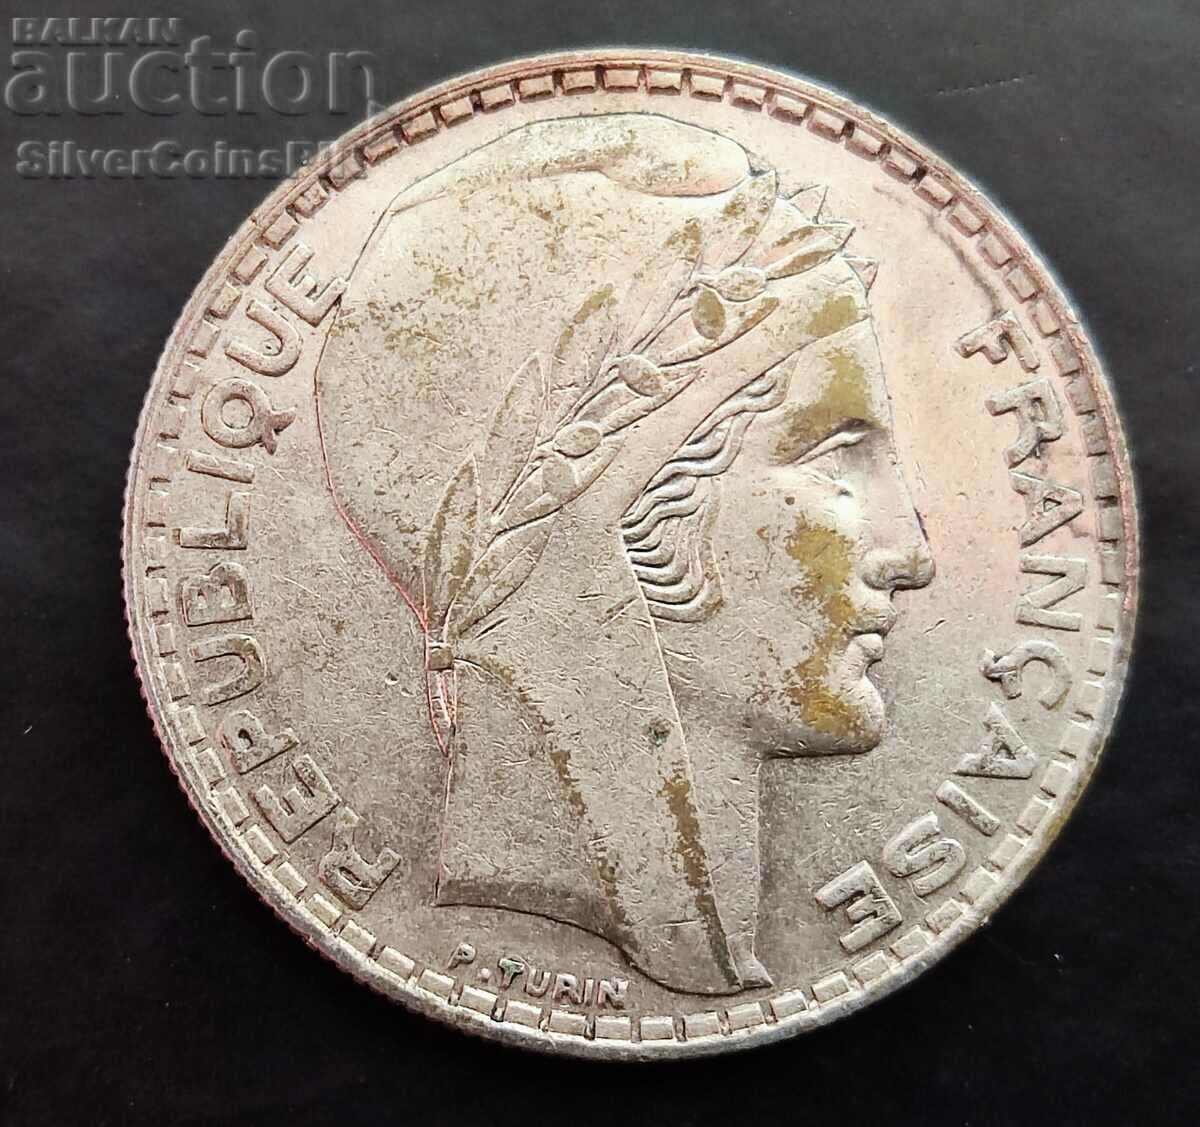 Silver 20 Francs 1933 France